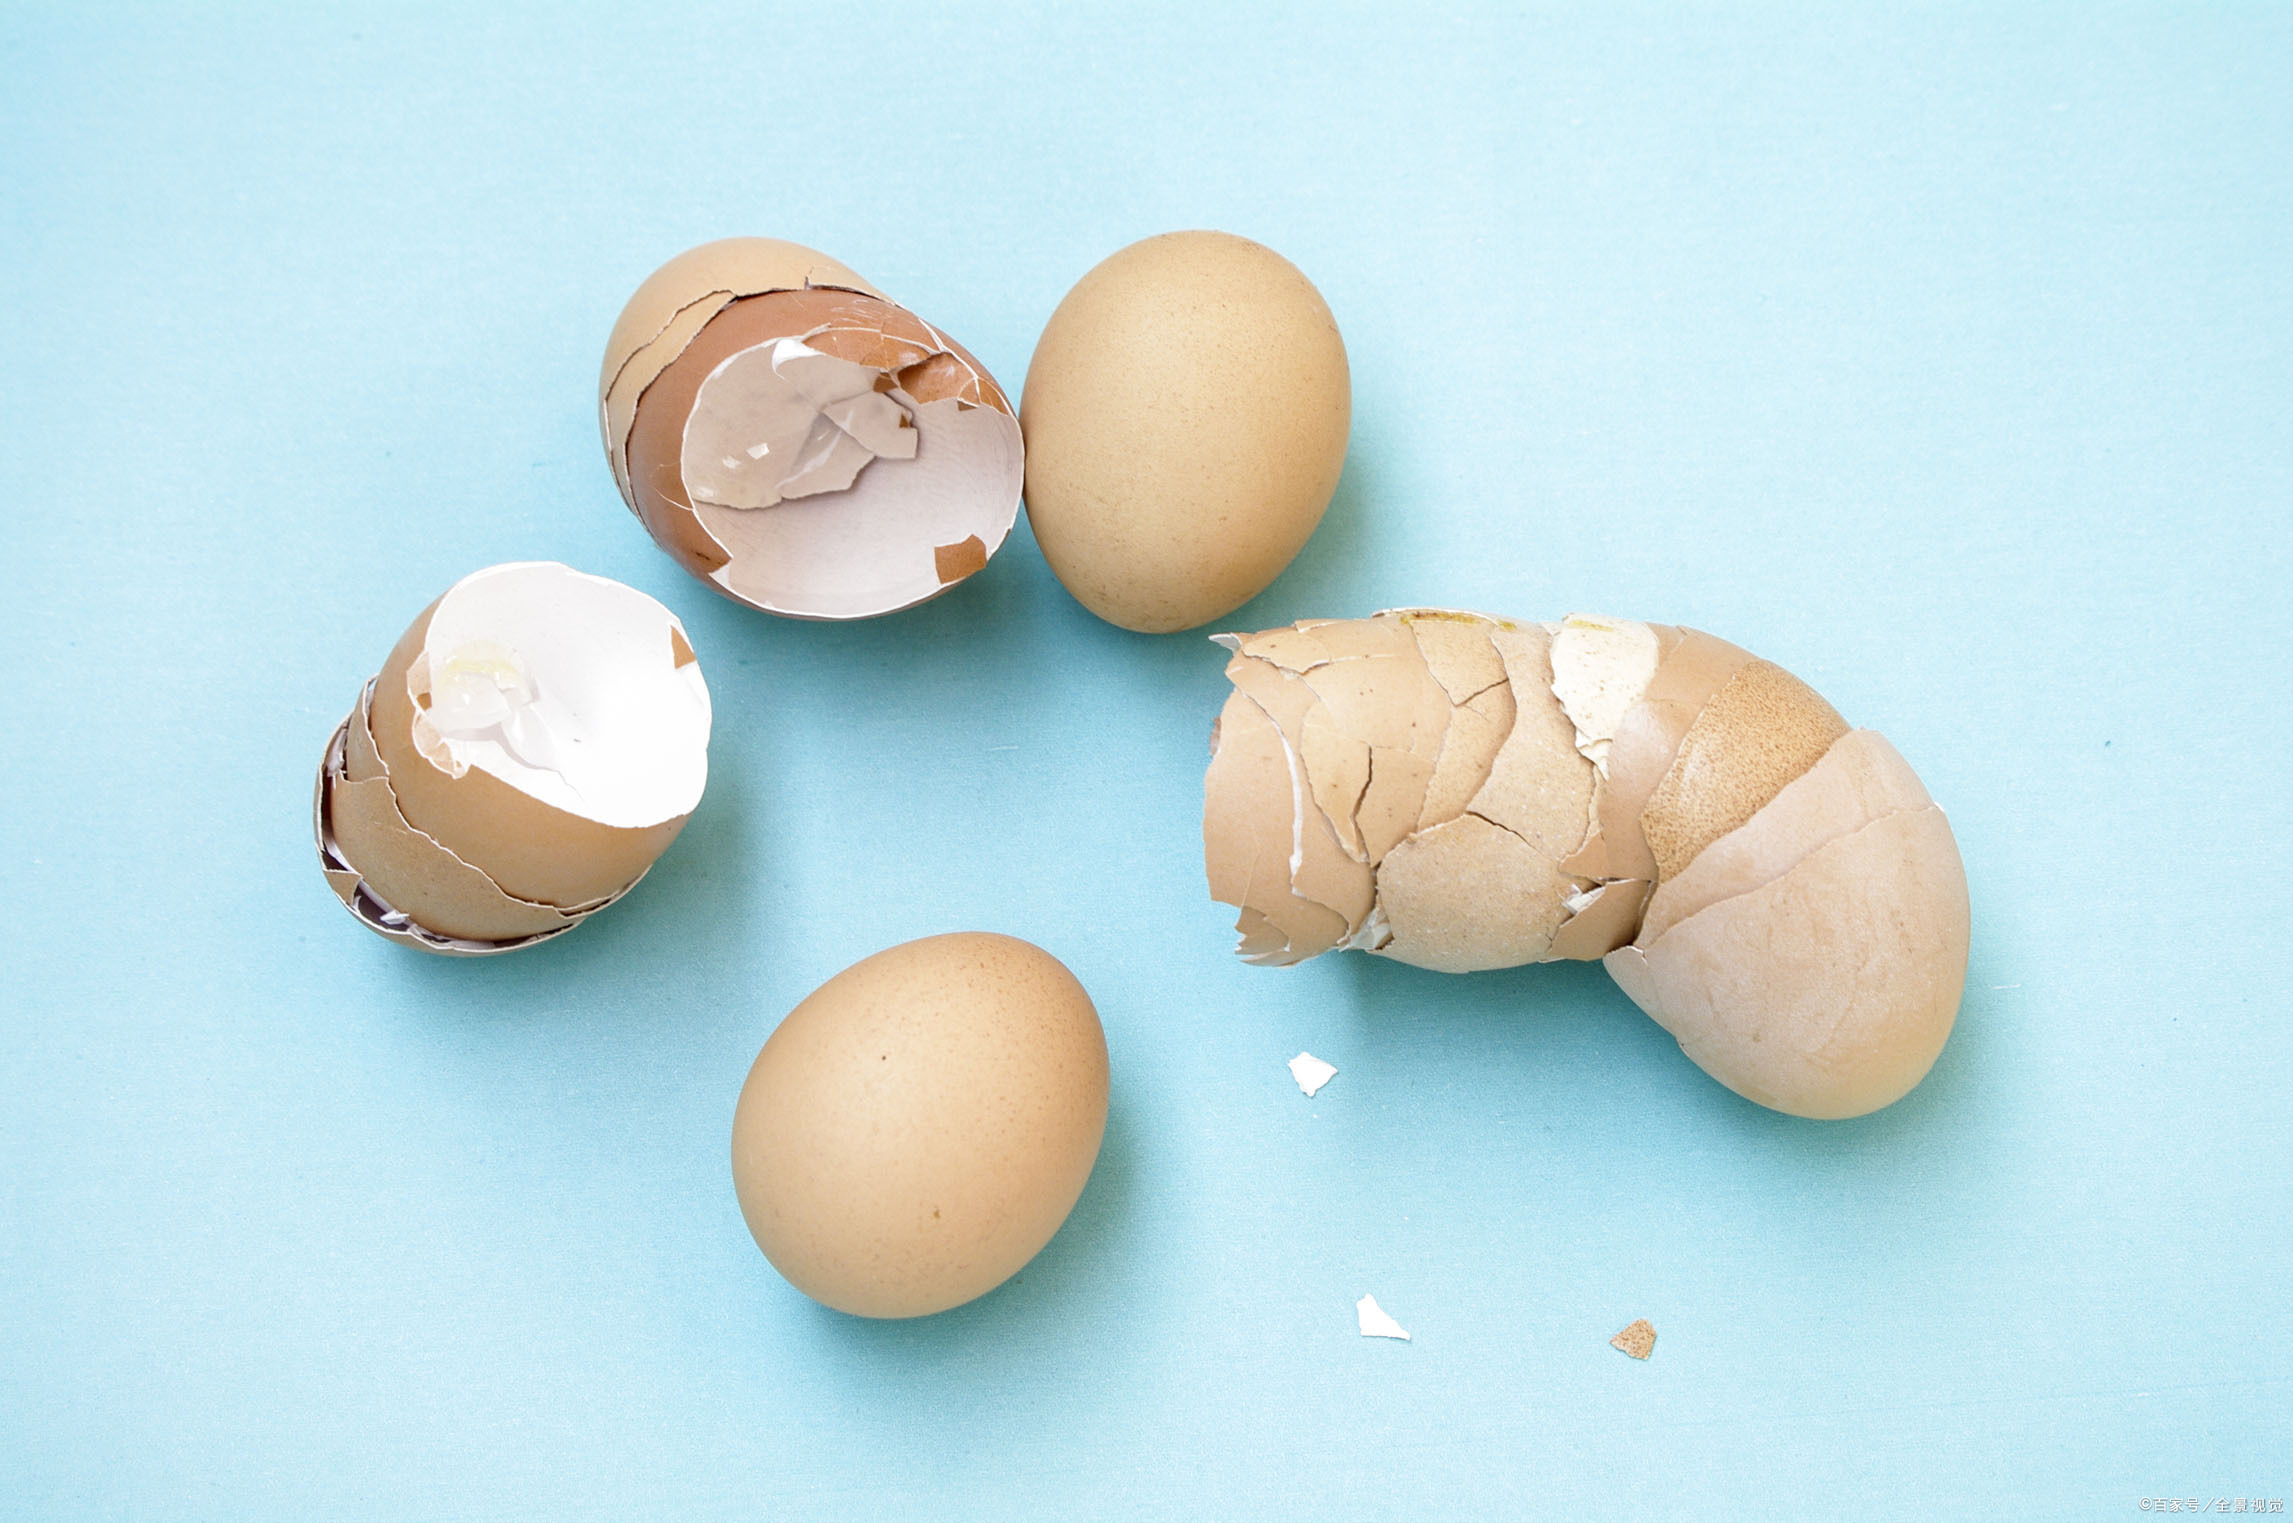 经过代谢之后而产生一种卵壳卟啉的物质,所以产下的鸡蛋